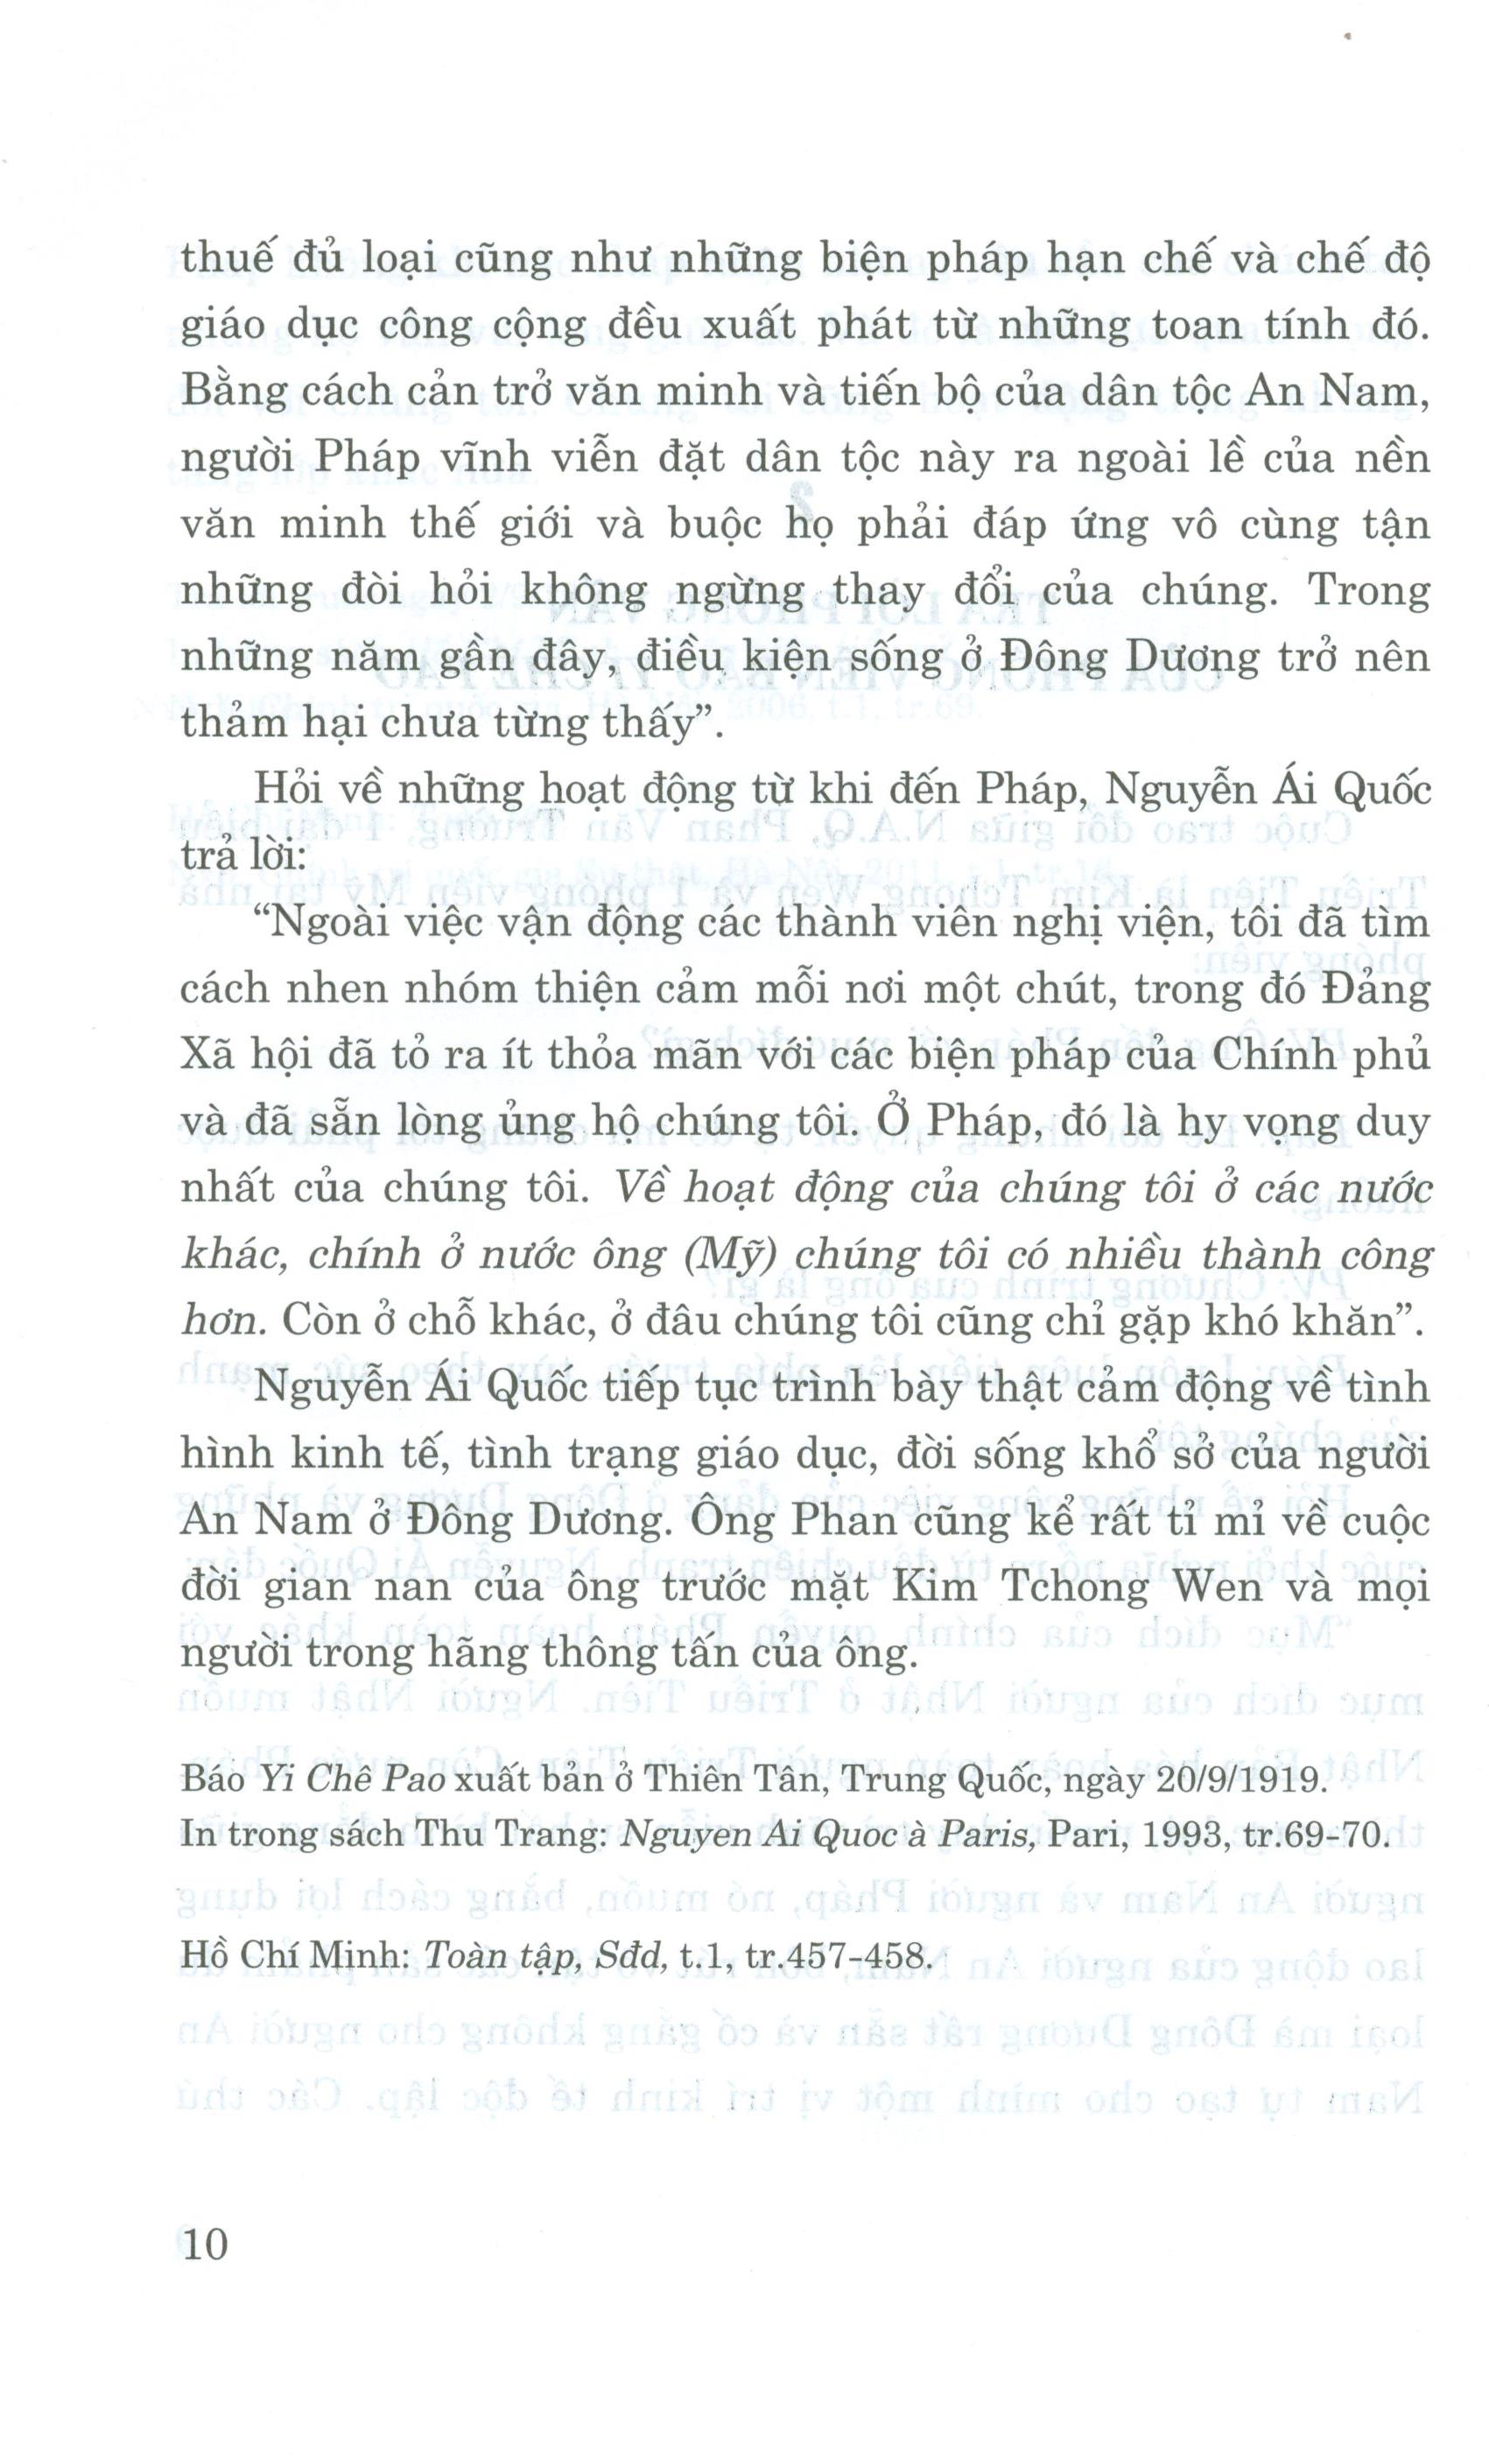 Nghệ Thuật Trả Lời Phỏng Vấn Của Chủ Tịch Hồ Chí Minh